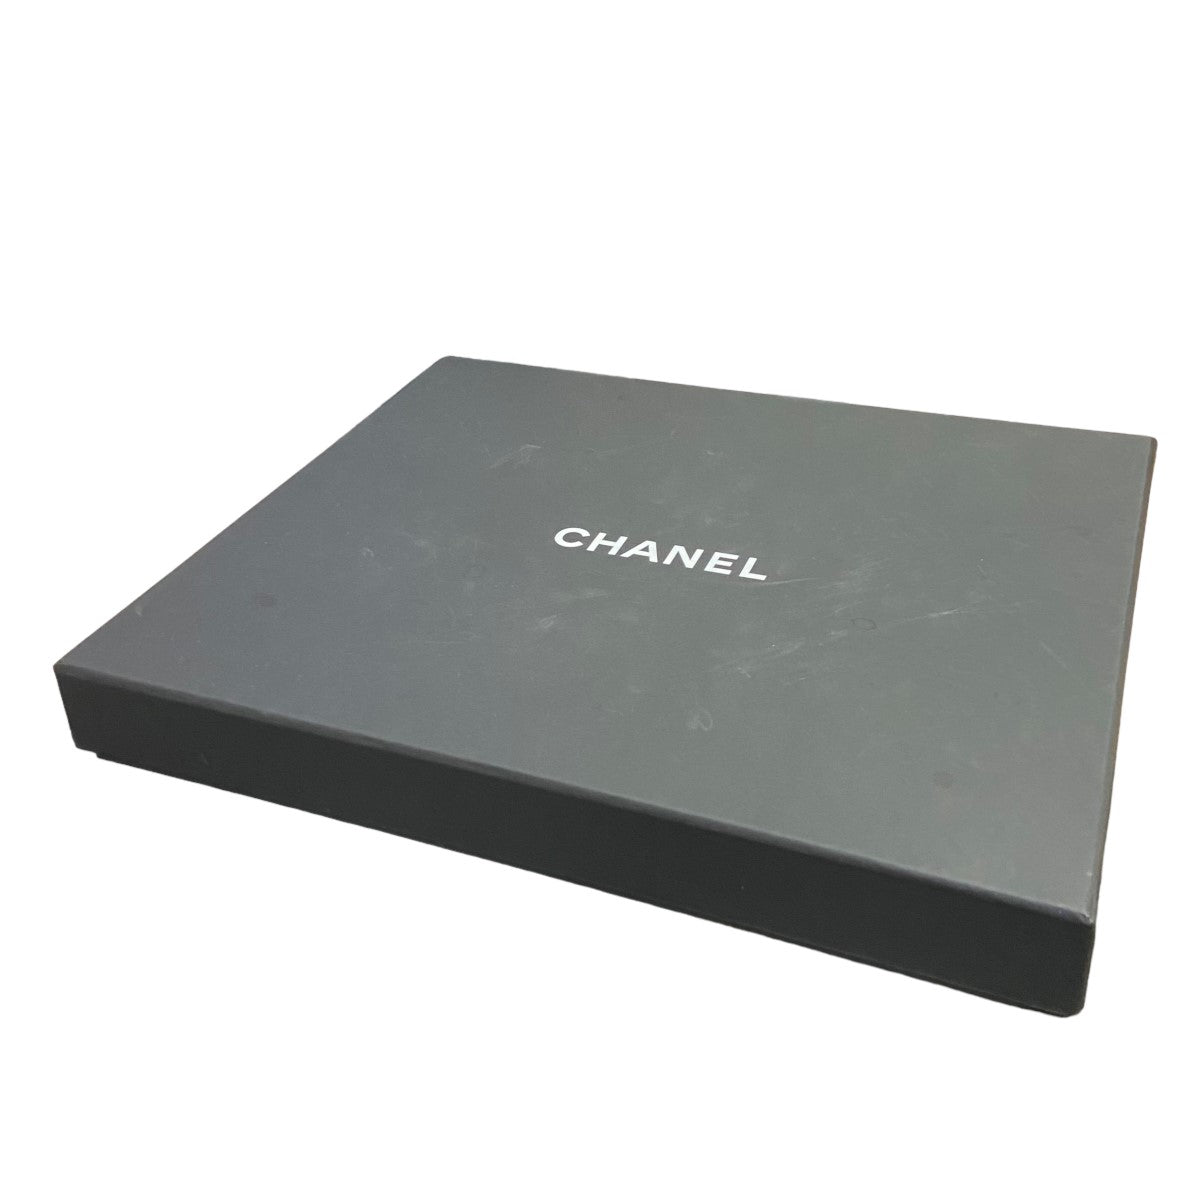 CHANEL(シャネル) 21Aチェーンカチューシャ ブラック×ゴールド サイズ 